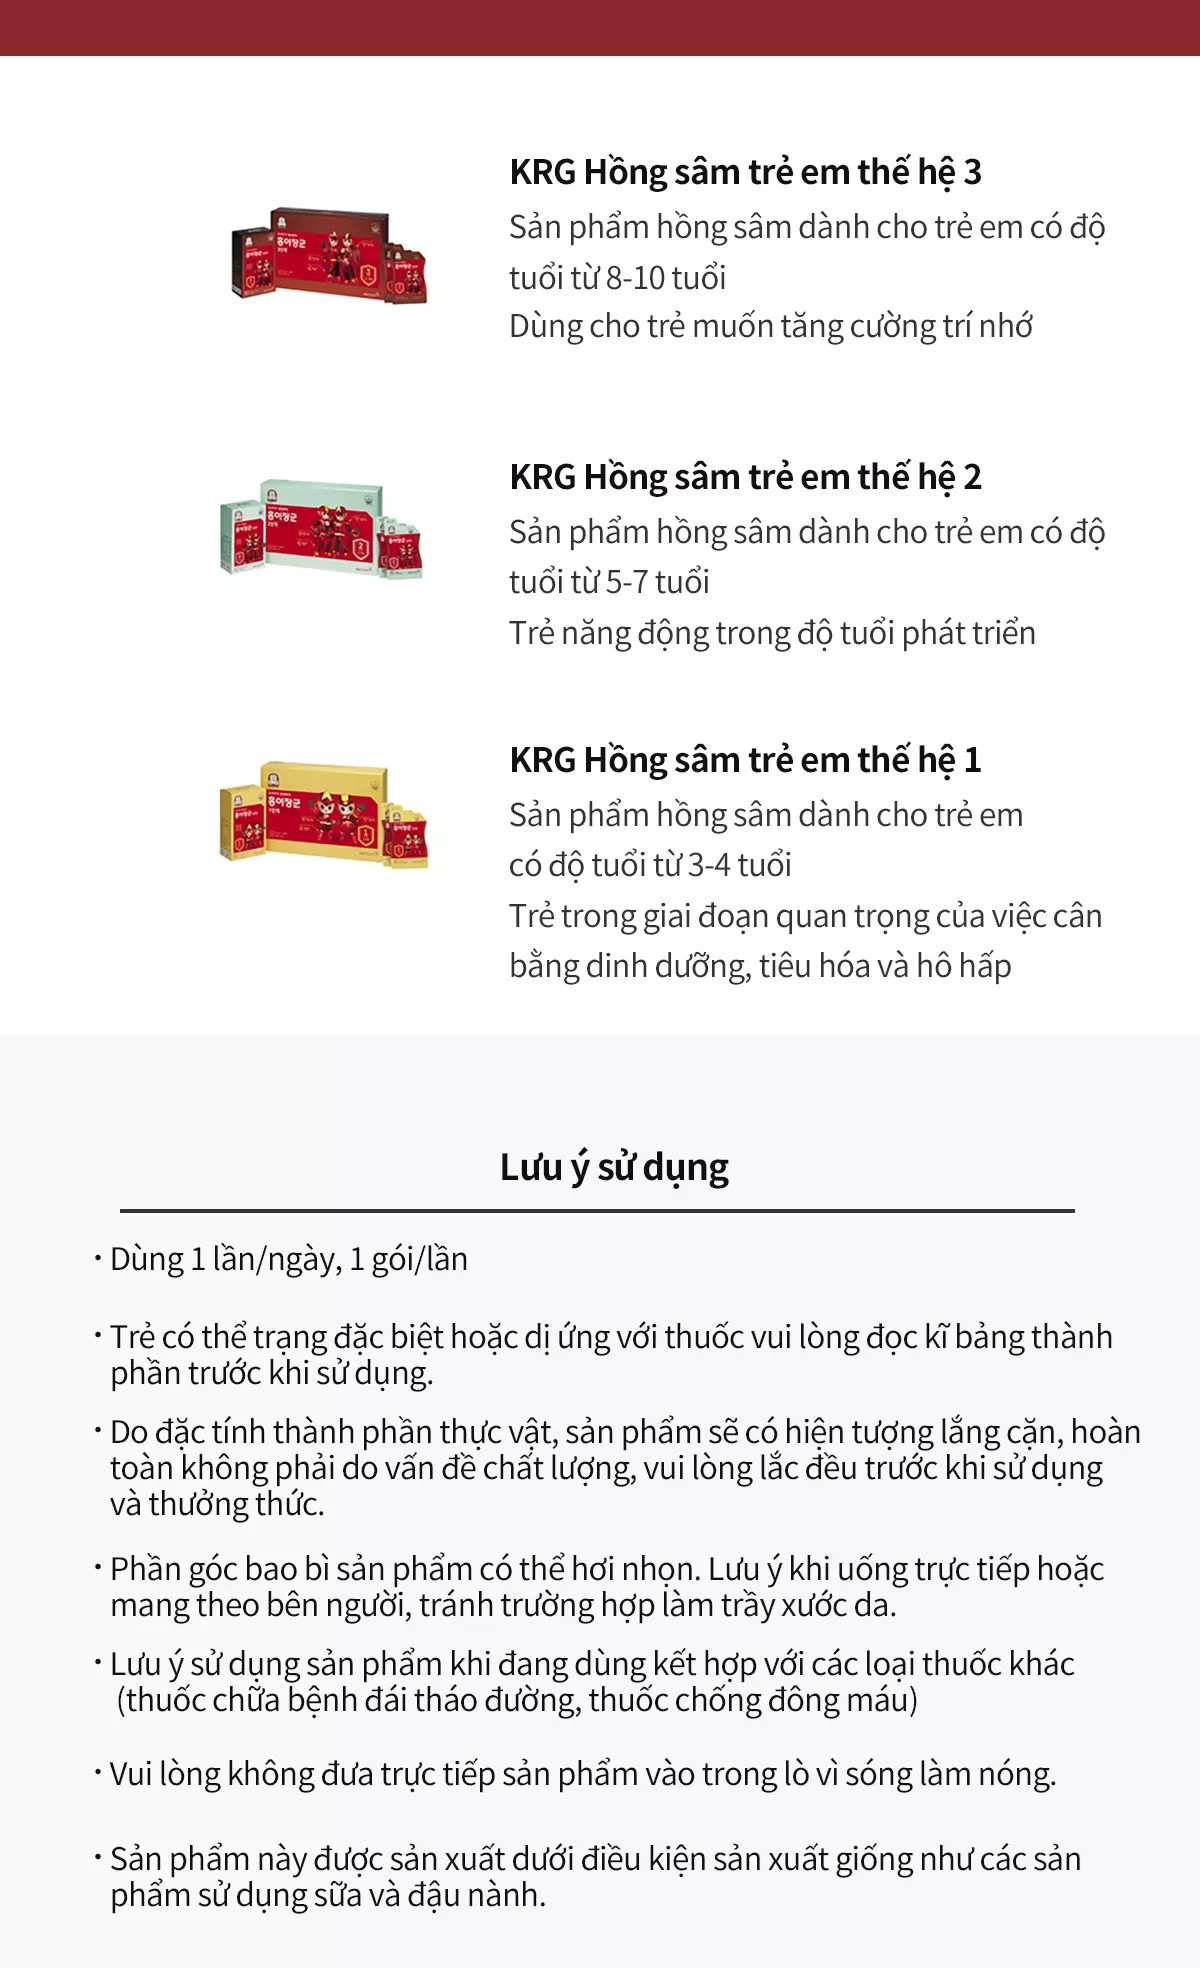 hồng sâm cho trẻ em kgc cheong kwan jang giai đoạn 3 (8-10 tuổi) 4